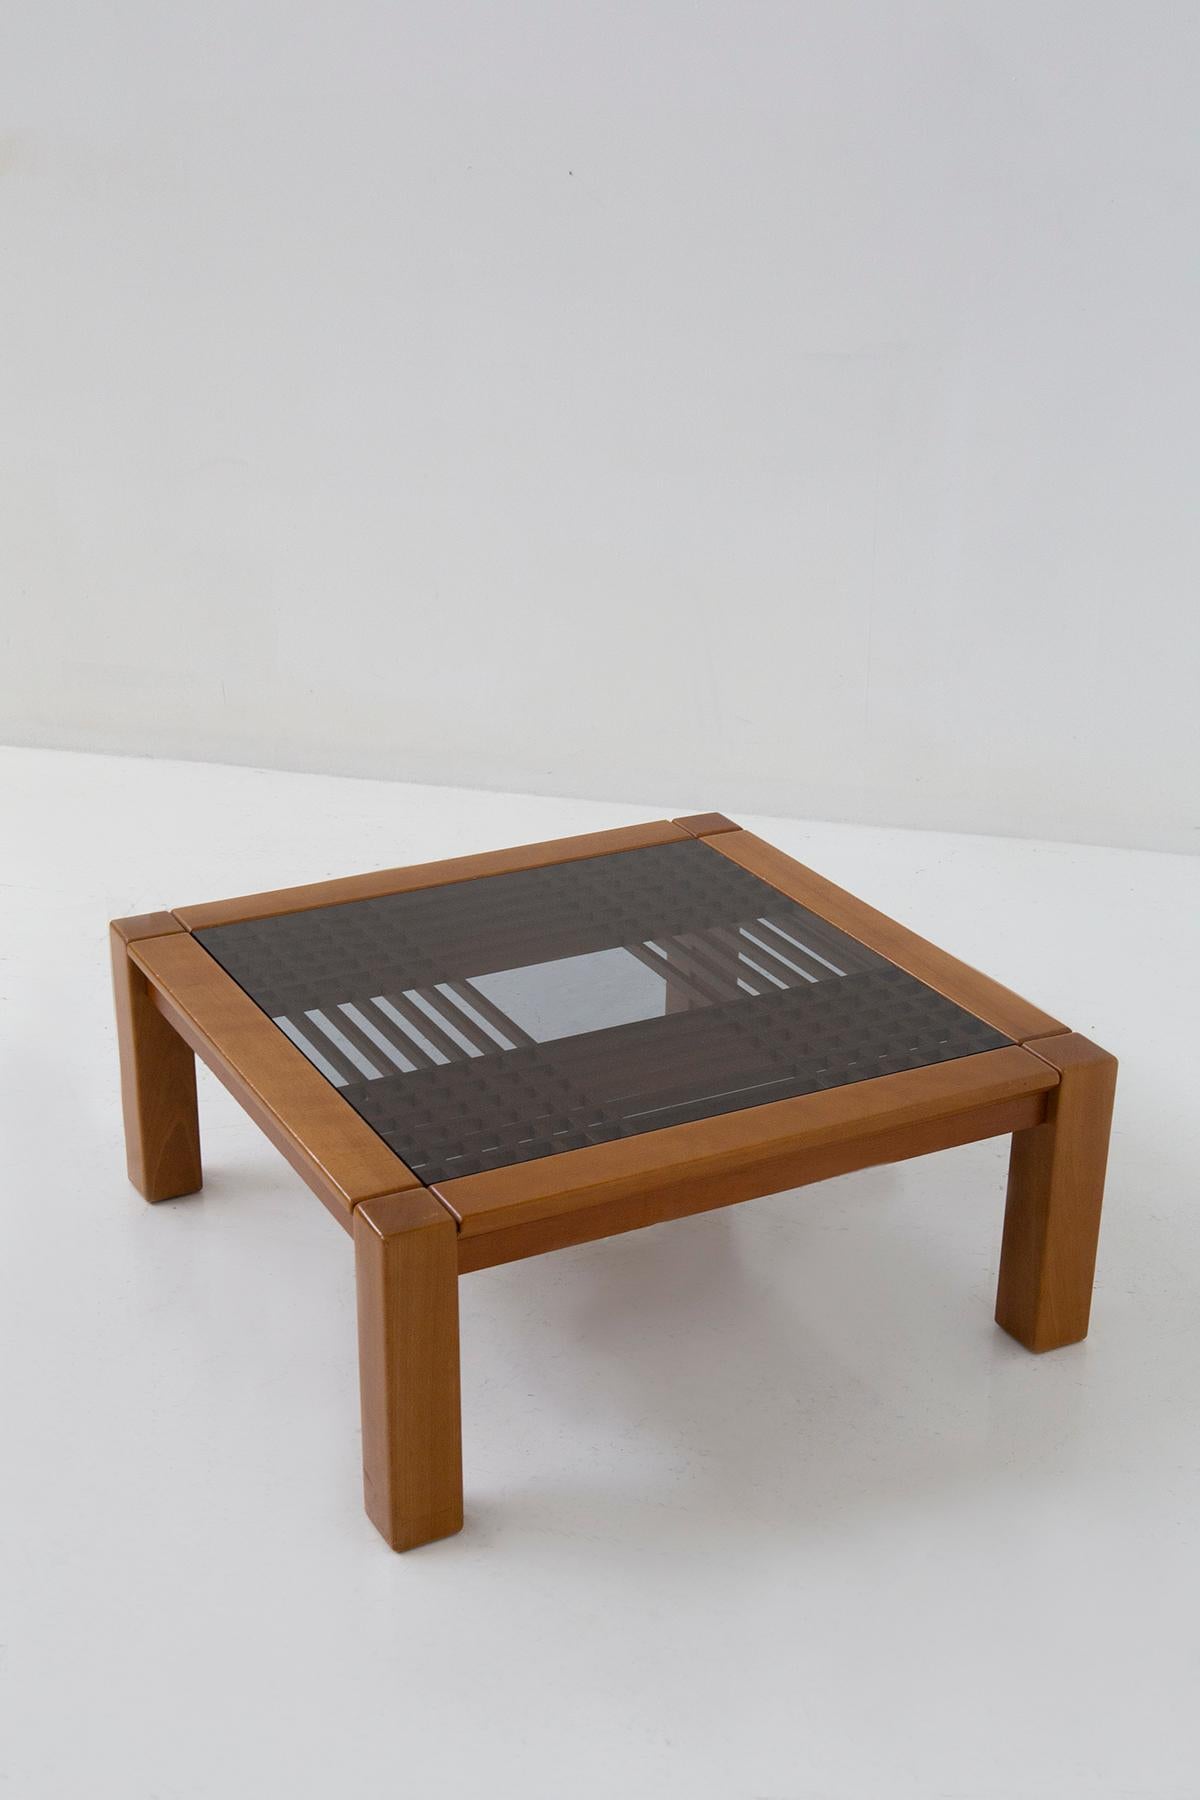 Entrez dans le monde de l'élégance intemporelle avec cette exquise table basse moderniste, un véritable chef-d'œuvre conçu par nul autre que le légendaire Ettore Sottsass au cours des vibrantes années 1960. Fabriquée avec précision par Santambrogio